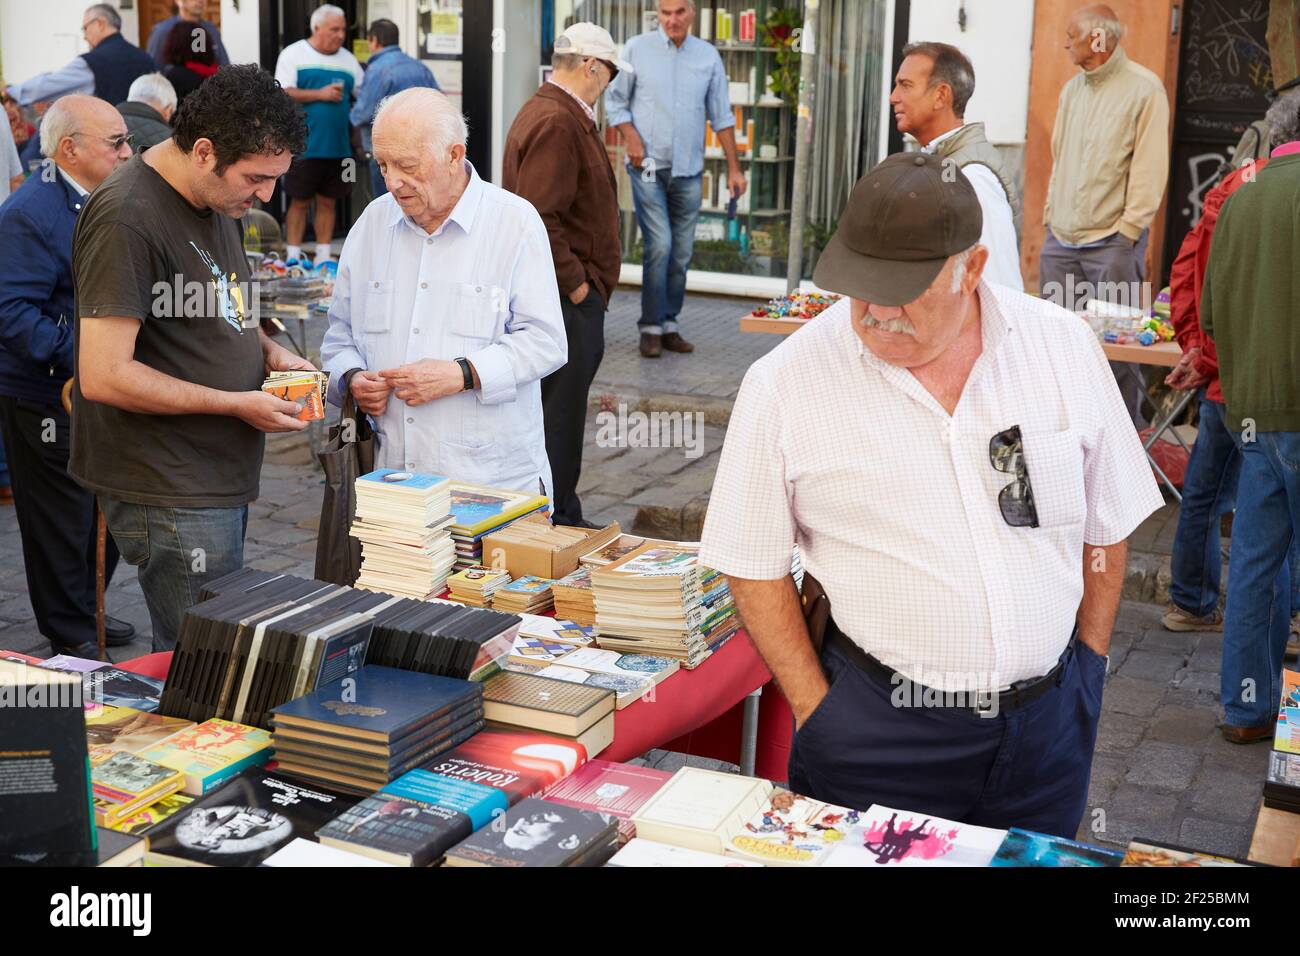 Gente en el mercado callejero más antiguo de Sevilla, el Mercadillo de los Jueves, el mercado de los jueves, Sevilla, Andalucía, España Foto de stock